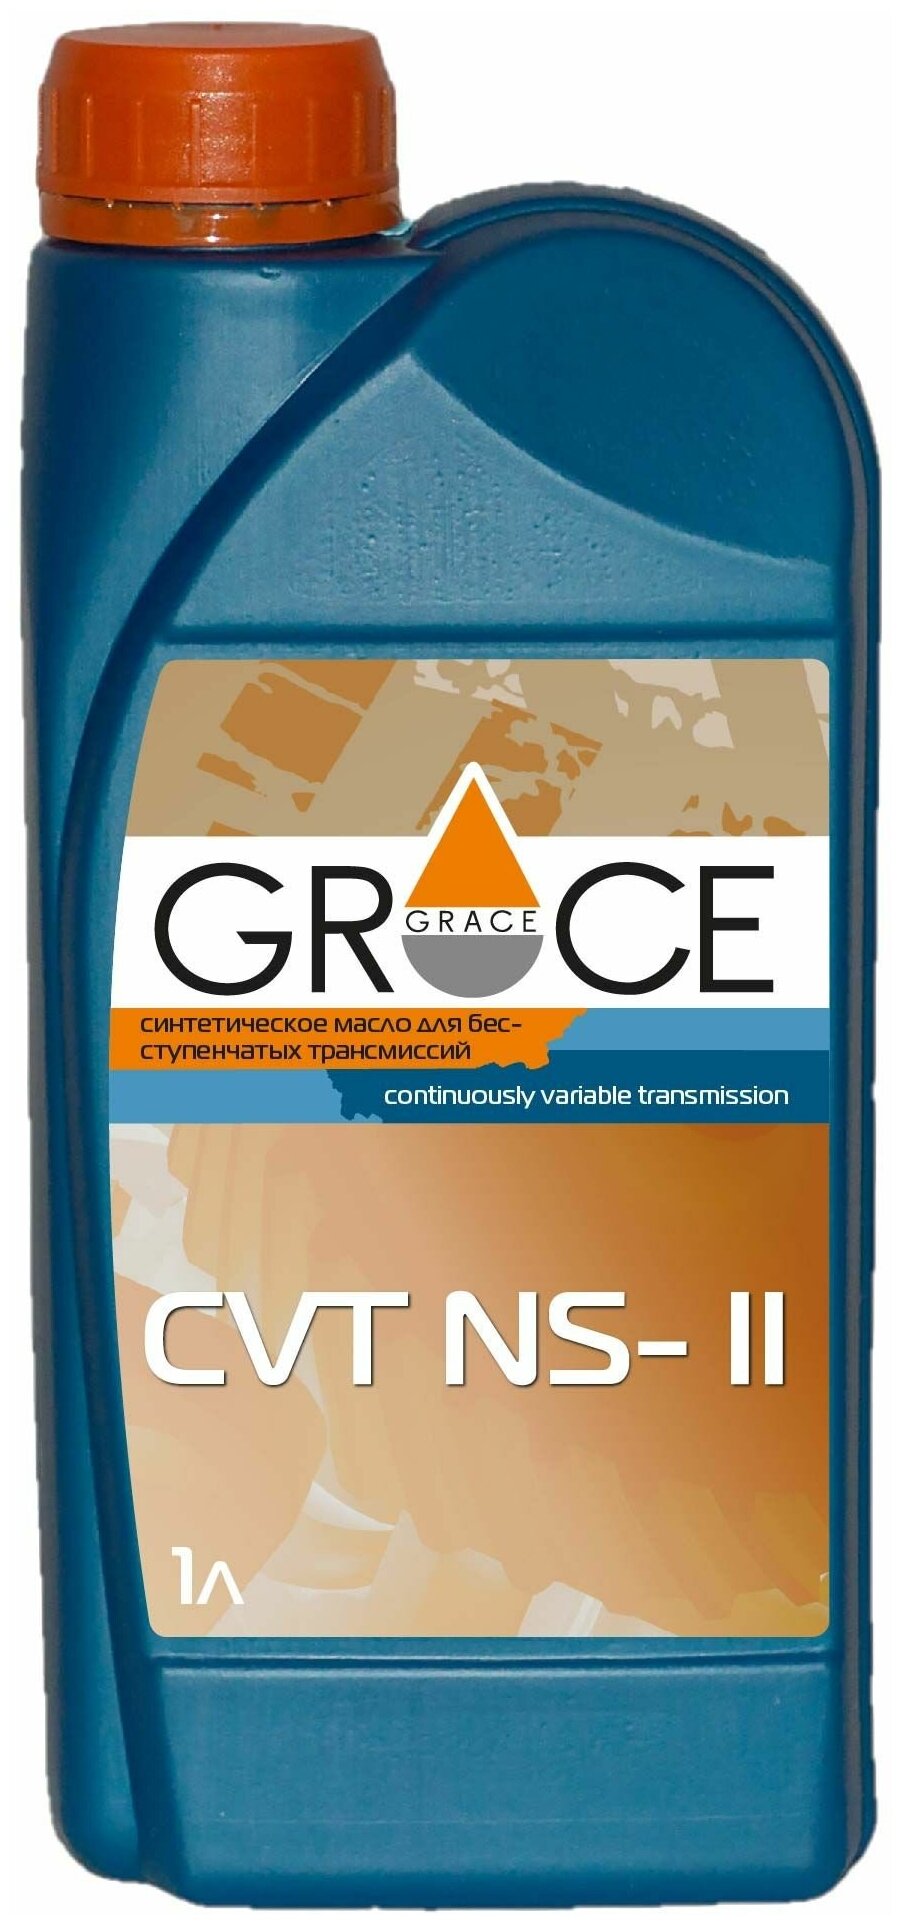 Трансмиссионное масло Grace CVT NS-II, 1 литр